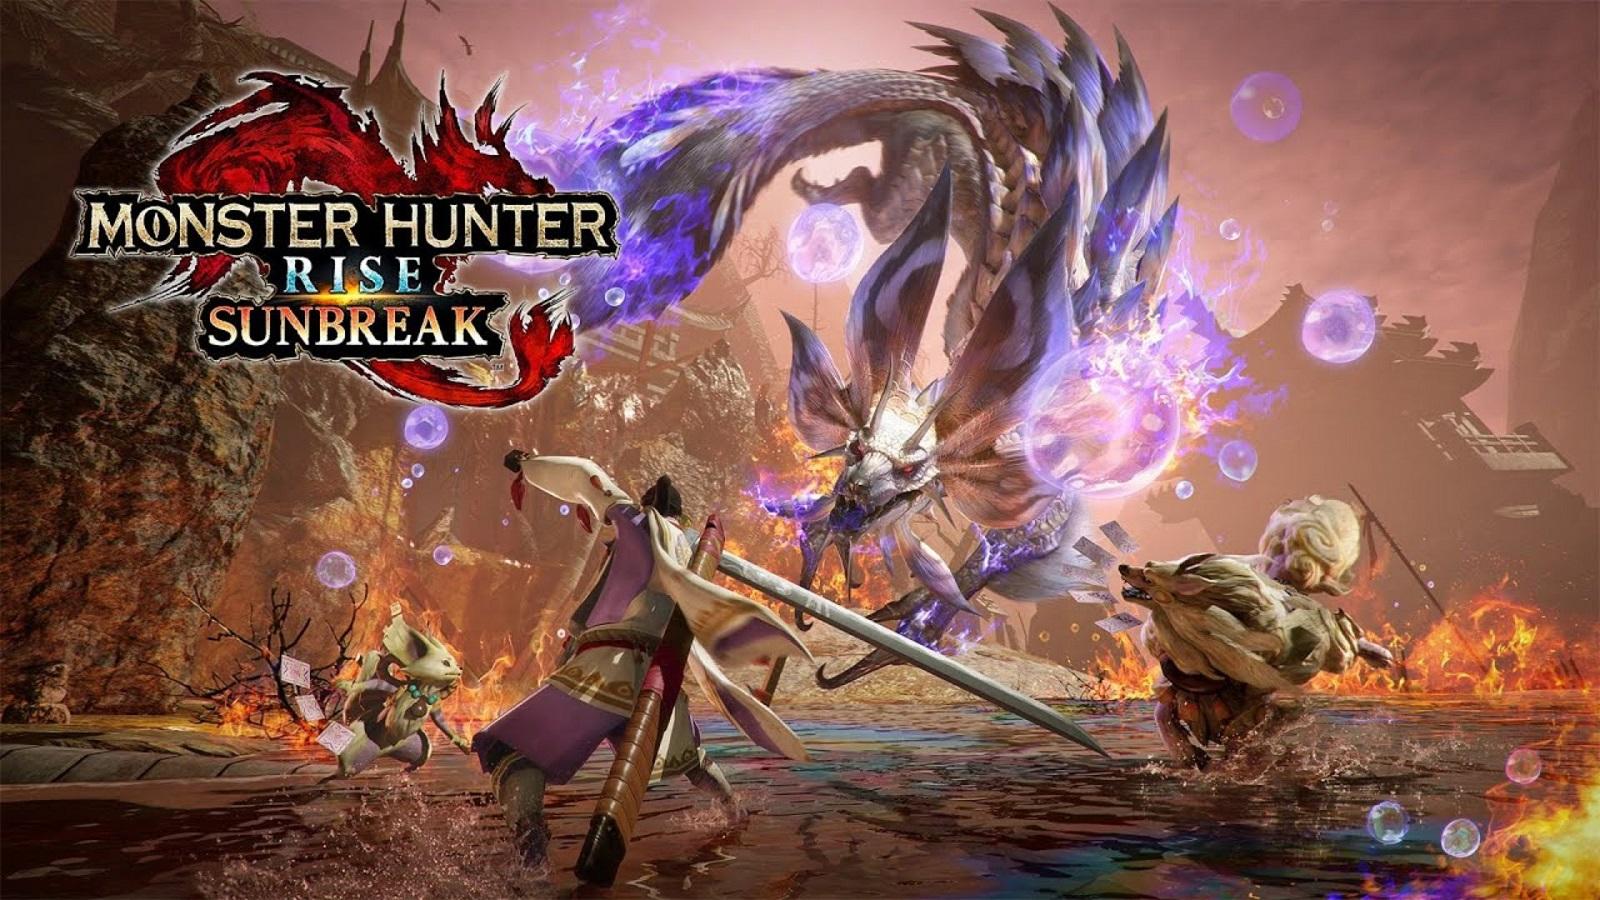 Wallpaper - Monster Hunter Rise – Monsters, Rewards